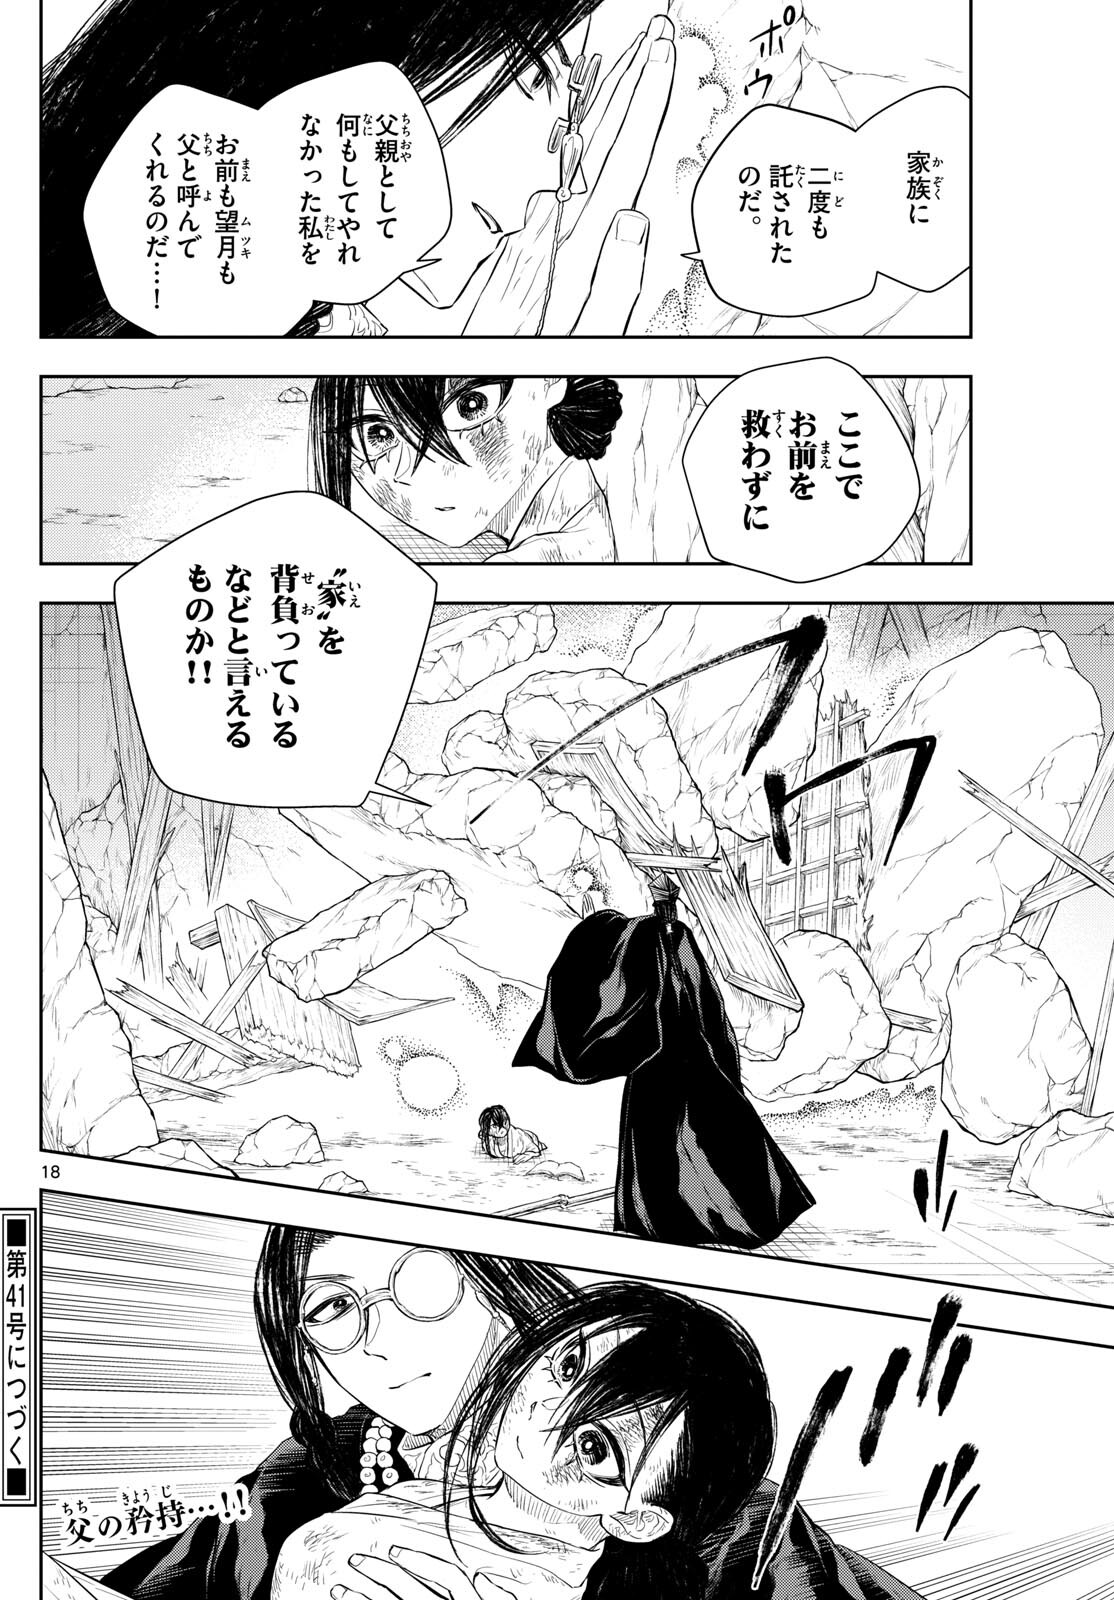 Akatsuki Jihen - Chapter 44 - Page 18